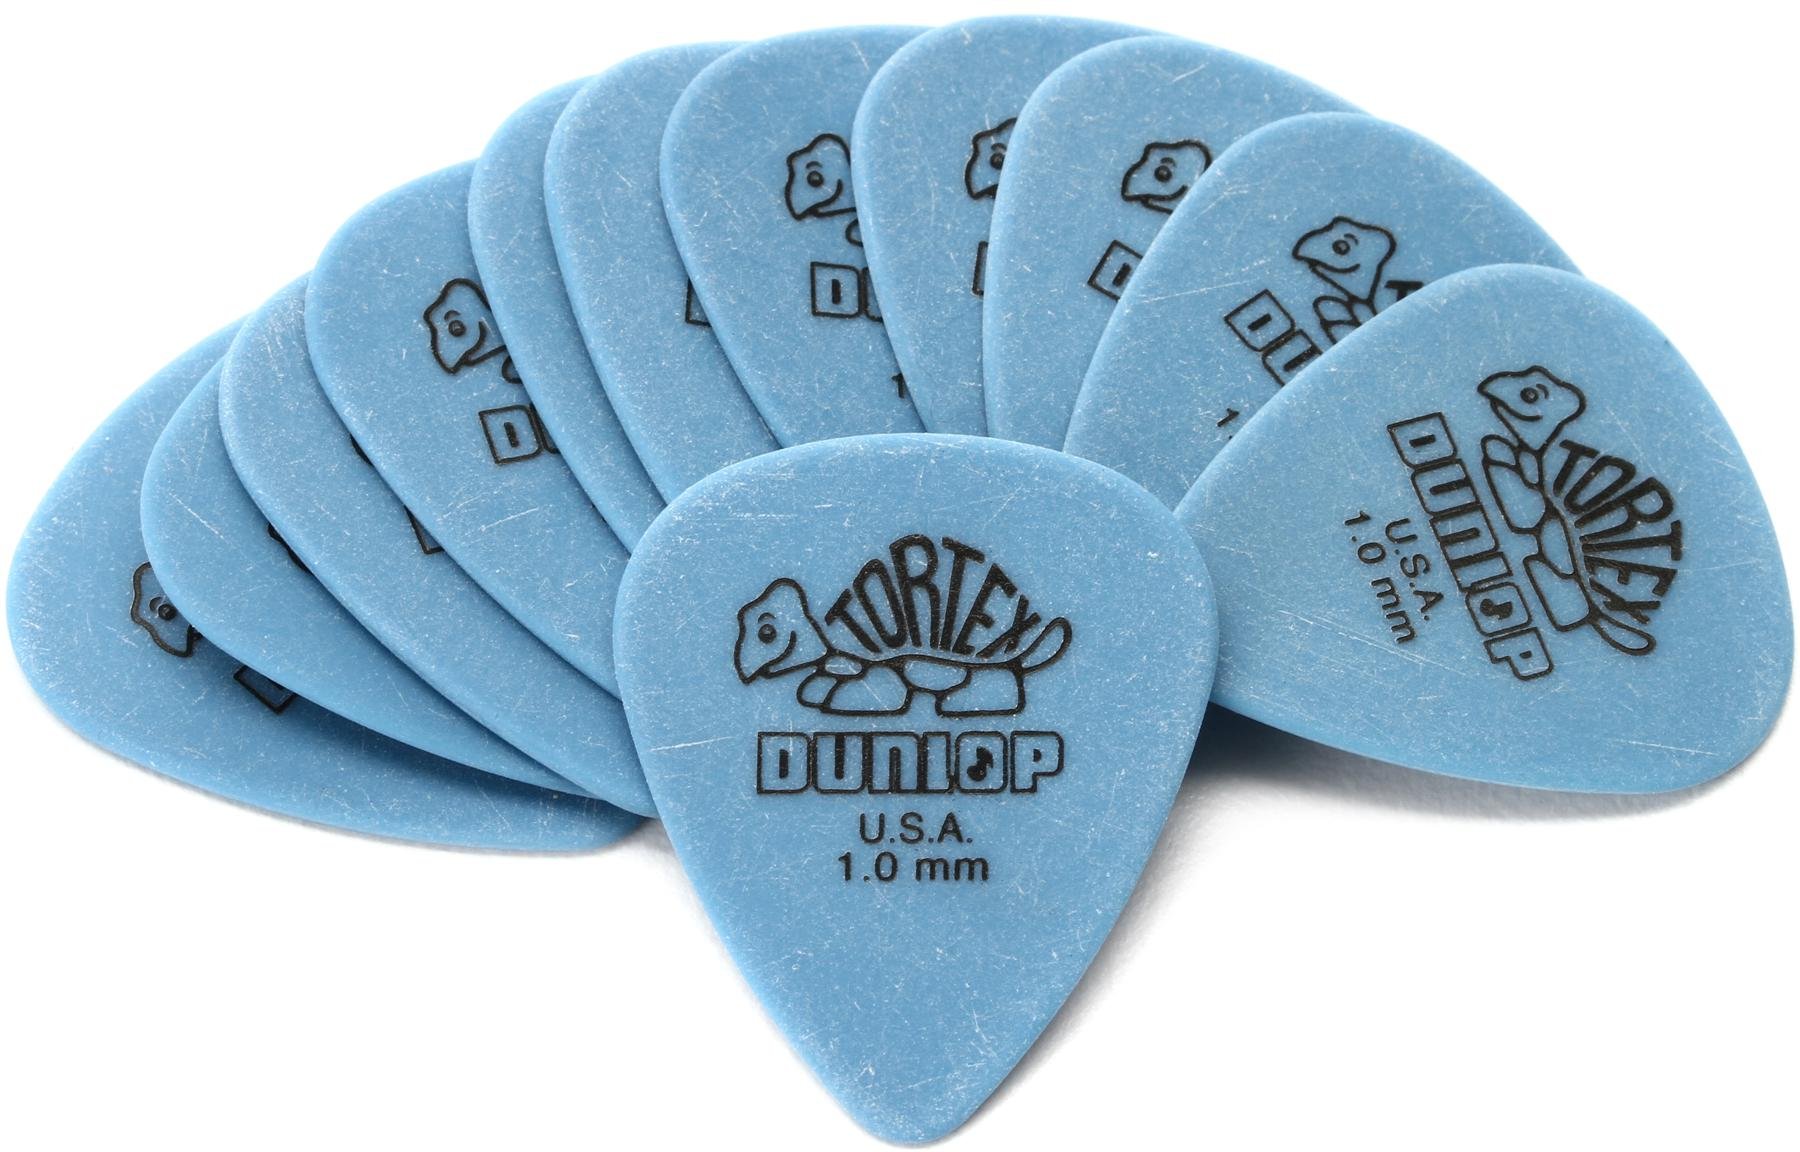 Dunlop Tortex Standard 1.0mm Blue Guitar Pick 12 Pack